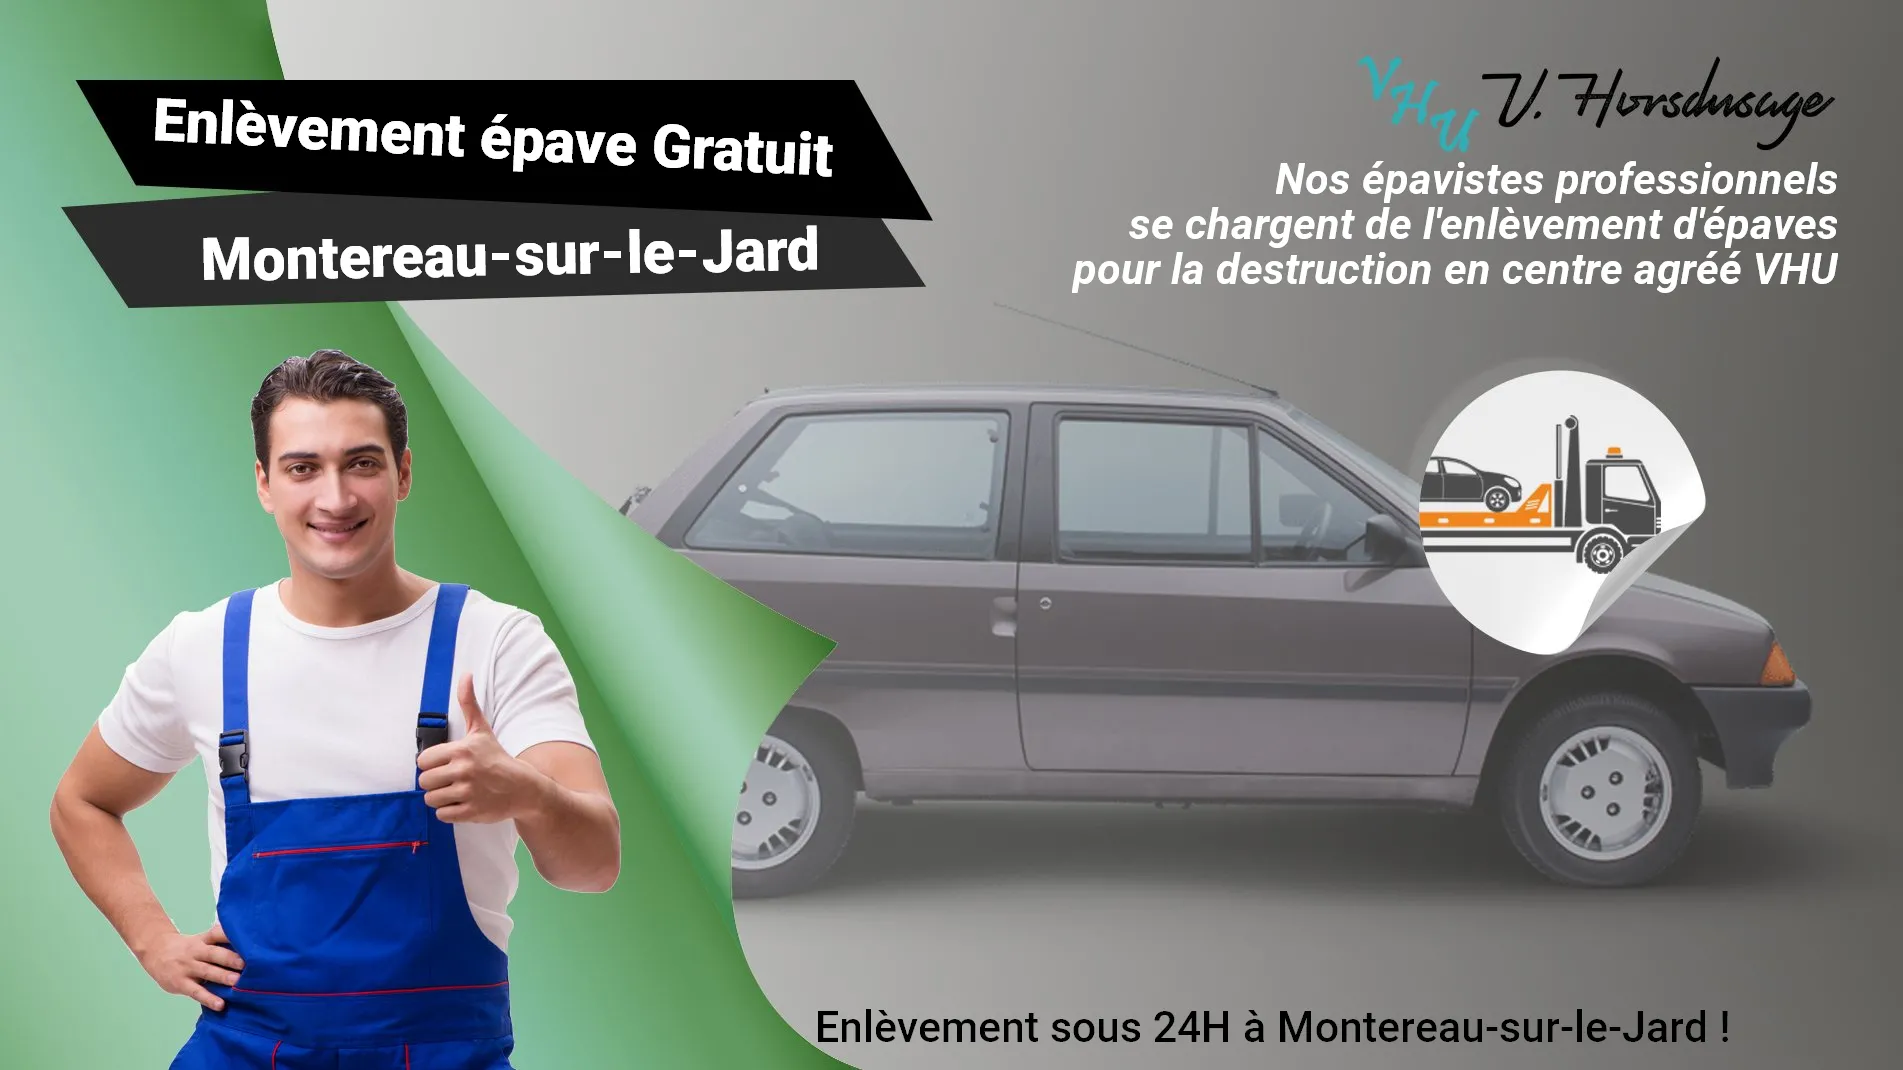 Pour un enlèvement gratuit à Montereau-sur-le-Jard, contactez nos épavistes agréé VHU